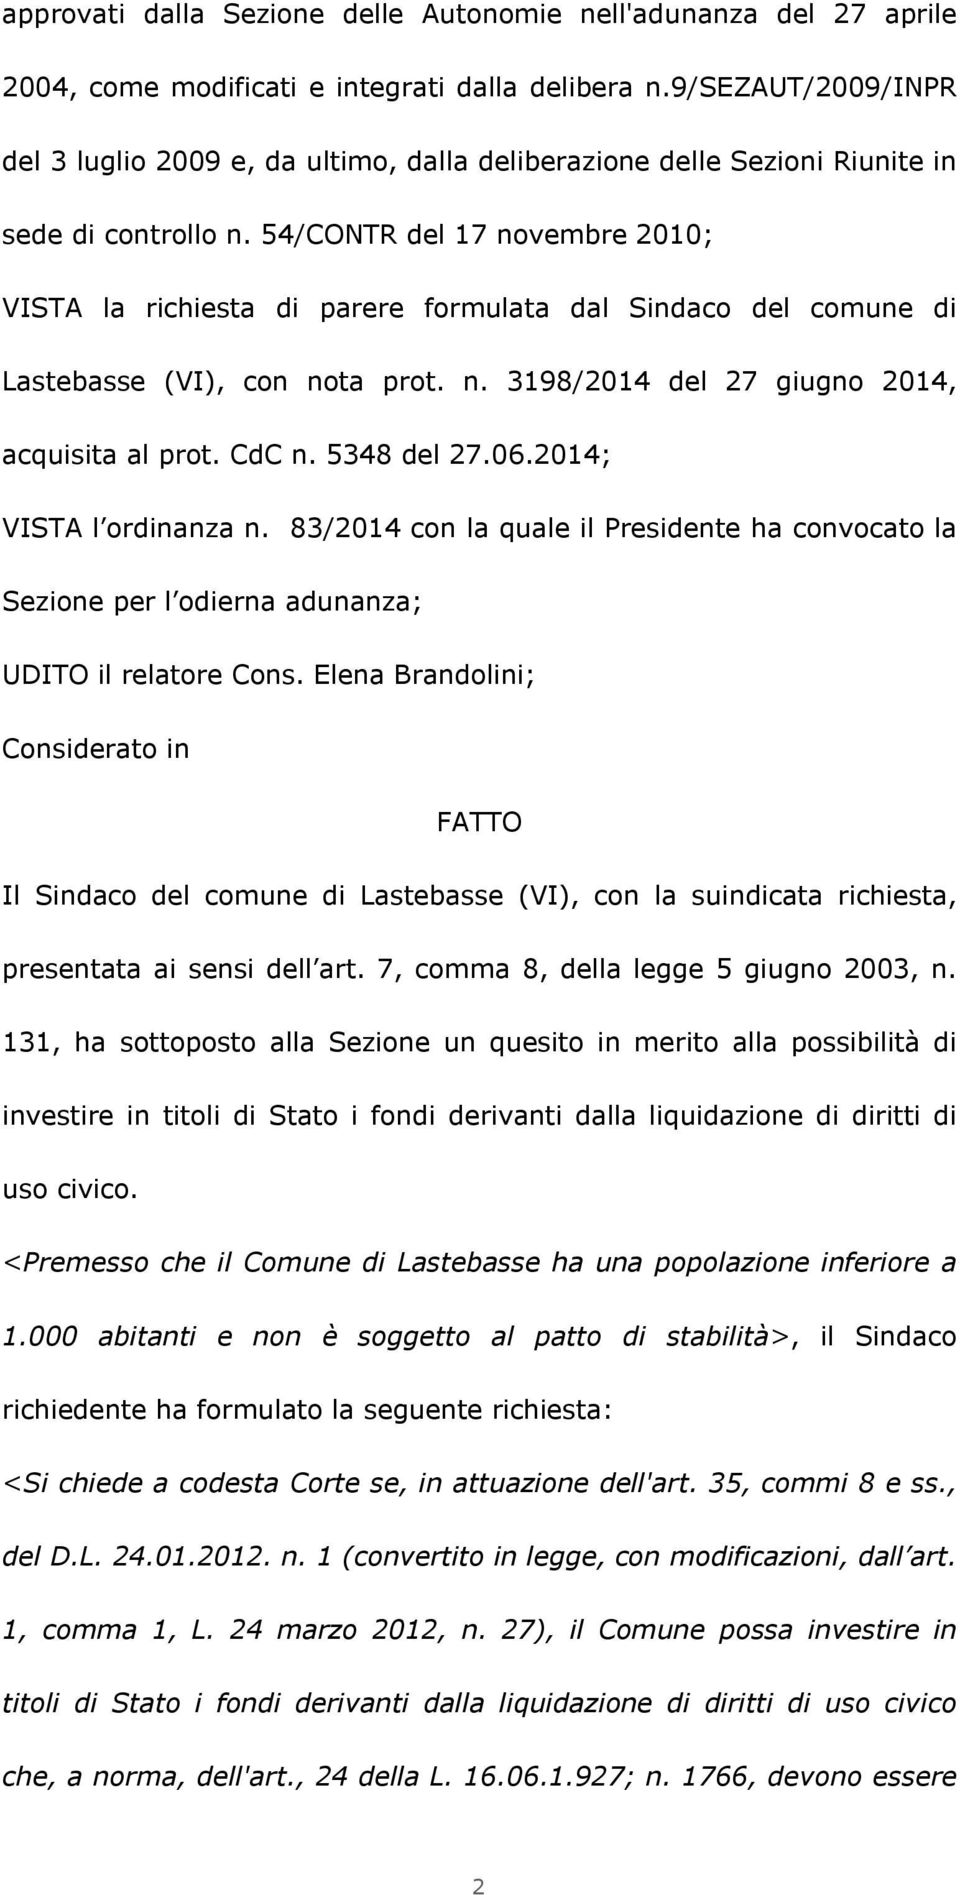 54/CONTR del 17 novembre 2010; VISTA la richiesta di parere formulata dal Sindaco del comune di Lastebasse (VI), con nota prot. n. 3198/2014 del 27 giugno 2014, acquisita al prot. CdC n. 5348 del 27.